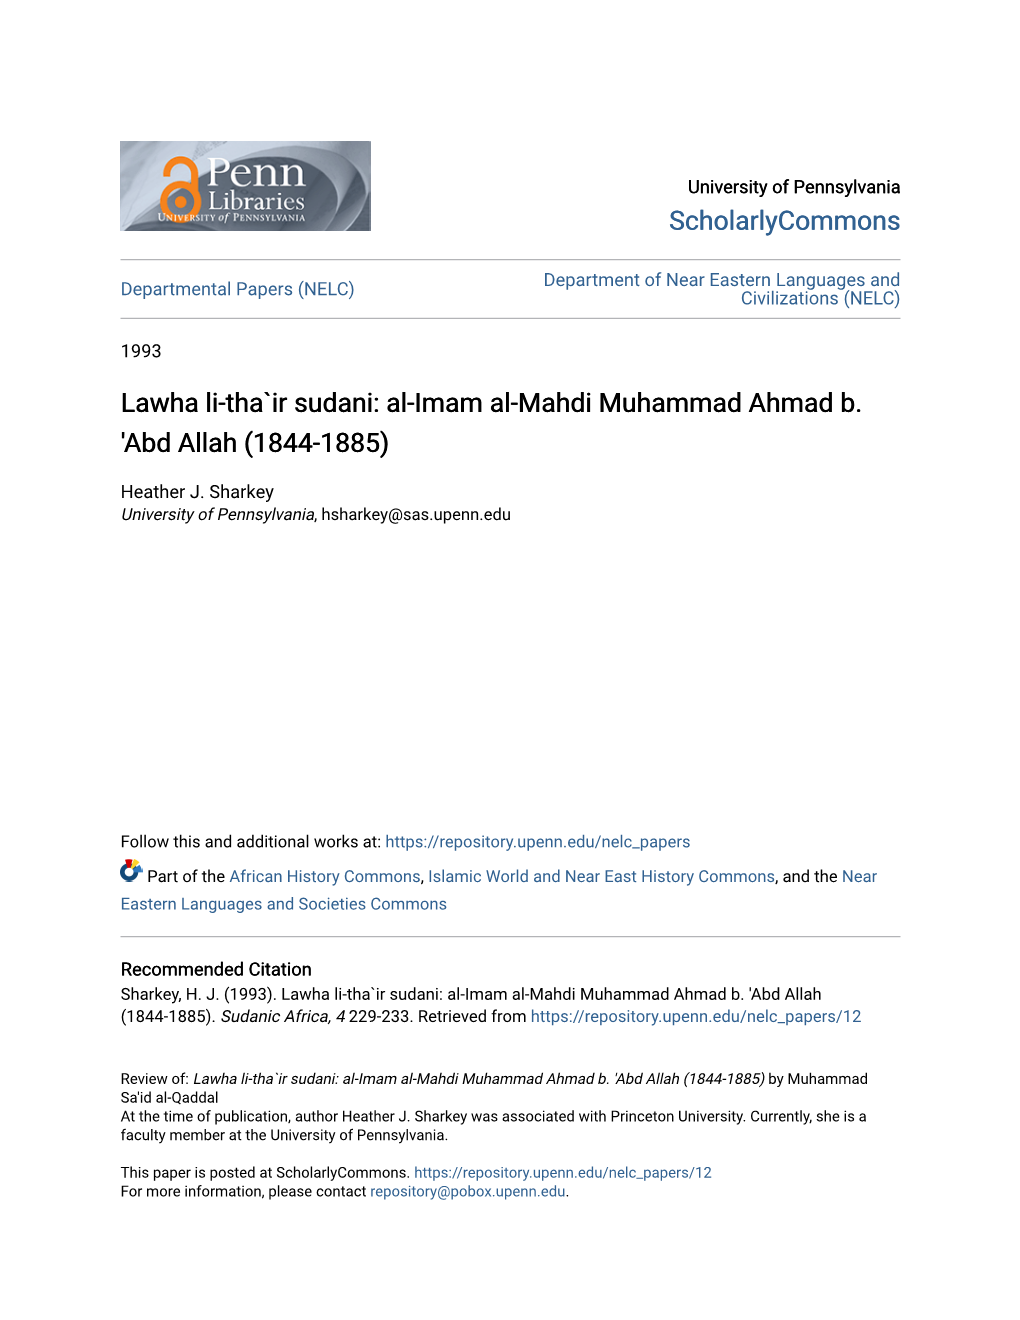 Al-Imam Al-Mahdi Muhammad Ahmad B. 'Abd Allah (1844-1885)